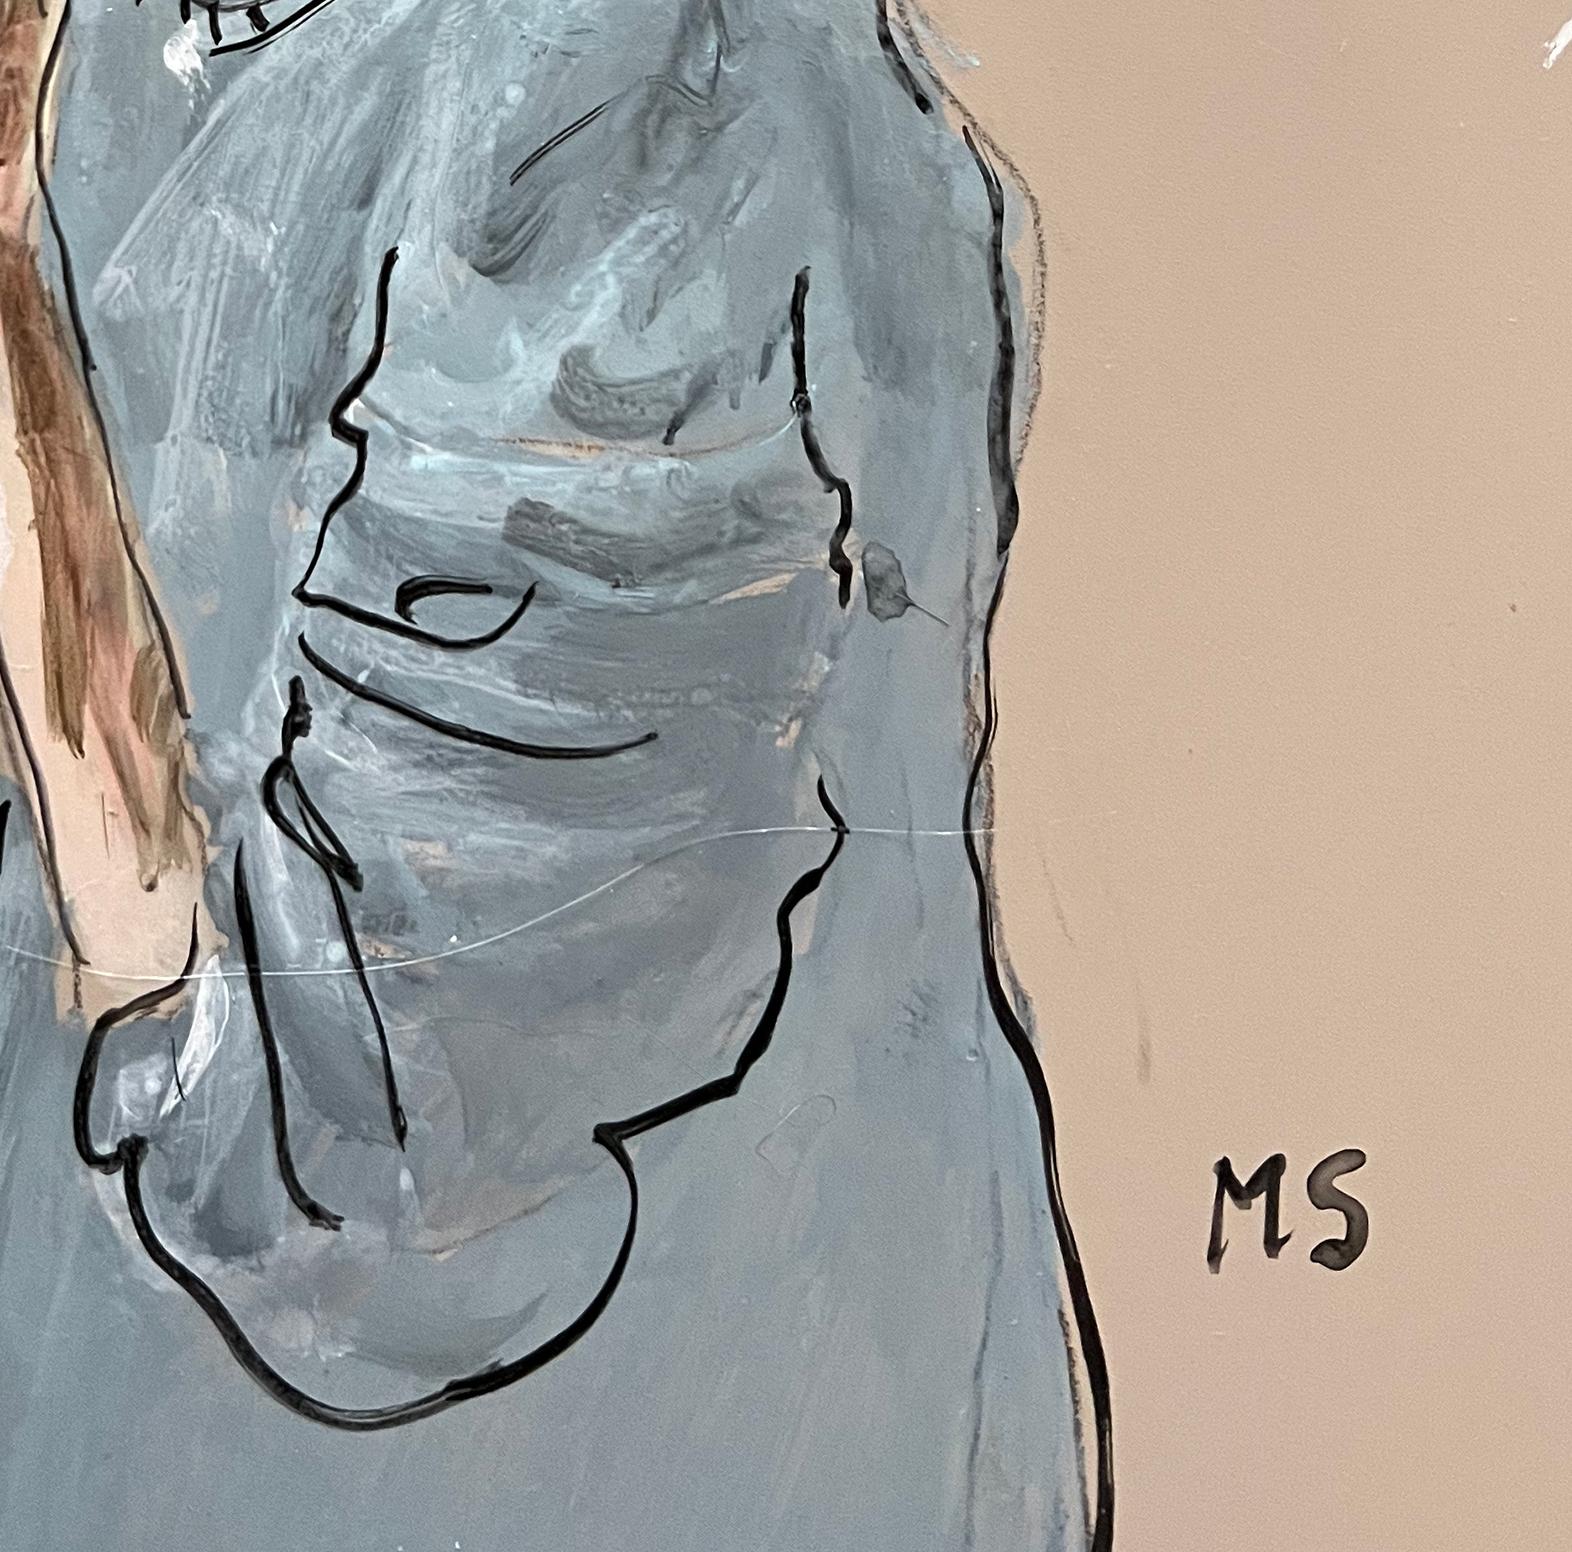 Porträt von Joan Didion, von Manuel Santelices
Acryl auf Gesso-Platte
Bildgröße: 14 in. H x 11 in. W 
Ungerahmt
2023

Die Welt der Mode, der Gesellschaft und der Popkultur wird durch die Illustrationen von Manuel Santelices, einem chilenischen